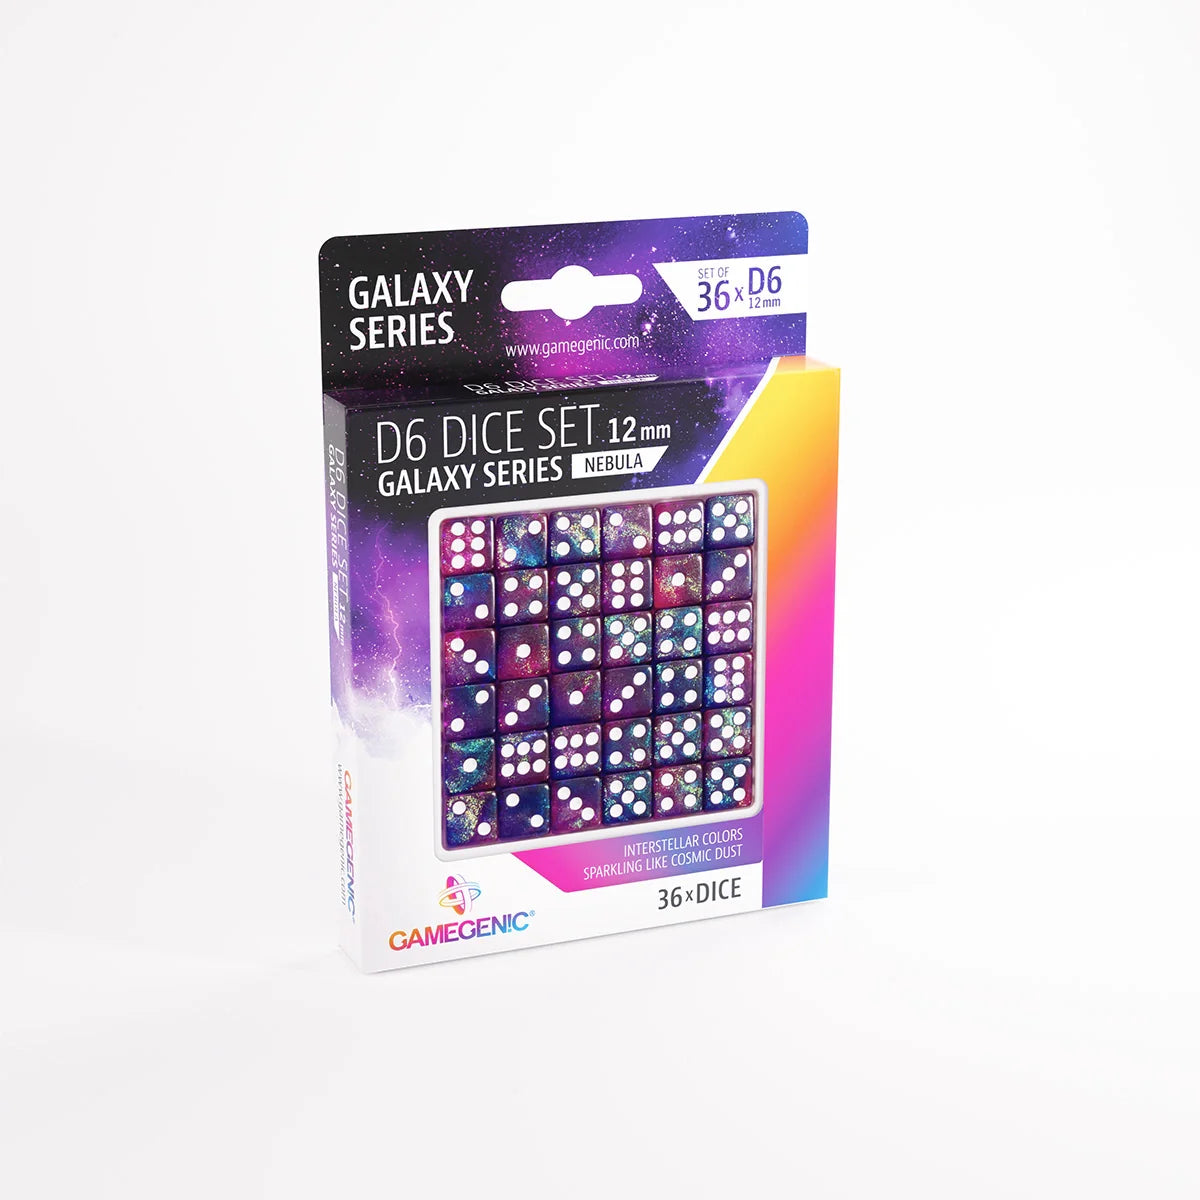 Gamegenic D6 Dice Set - Galaxy Series - Nebula (36x 12mm D6)